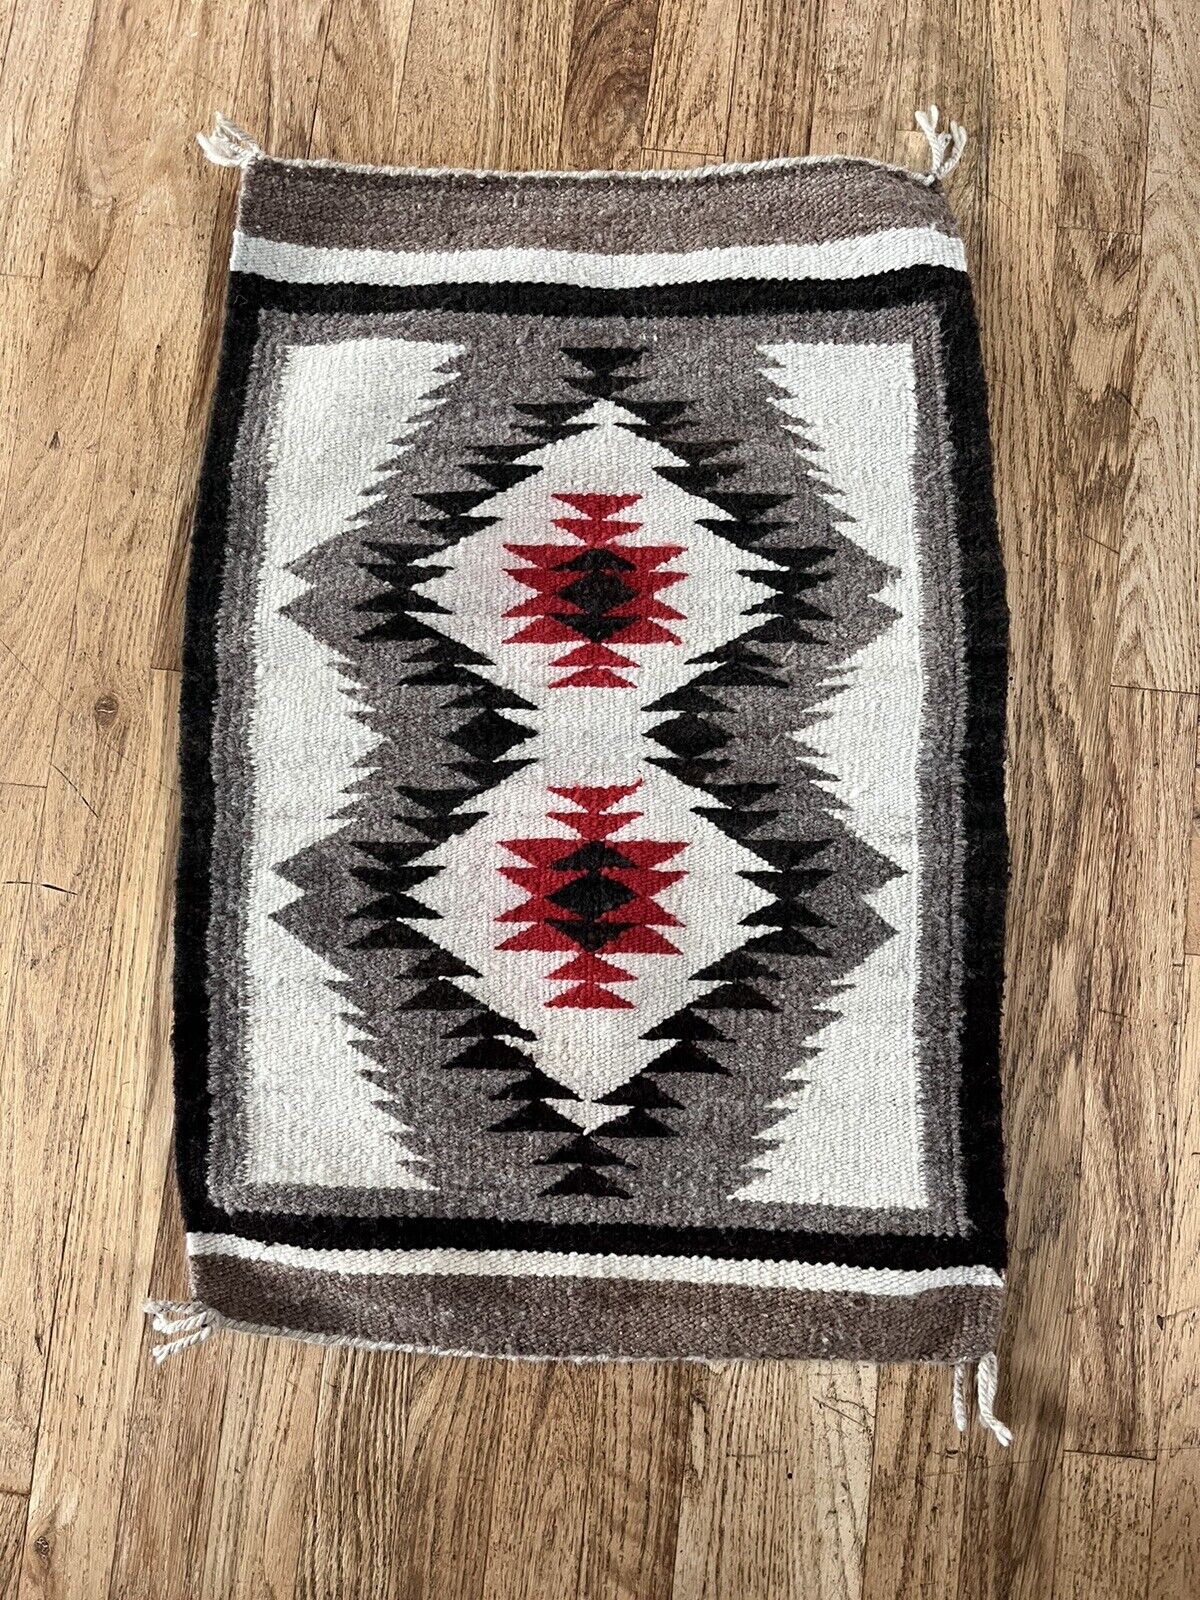 Vintage Navajo Woven Saddle Blanket Rug Southwestern 30 1/2” x 20 3/4”